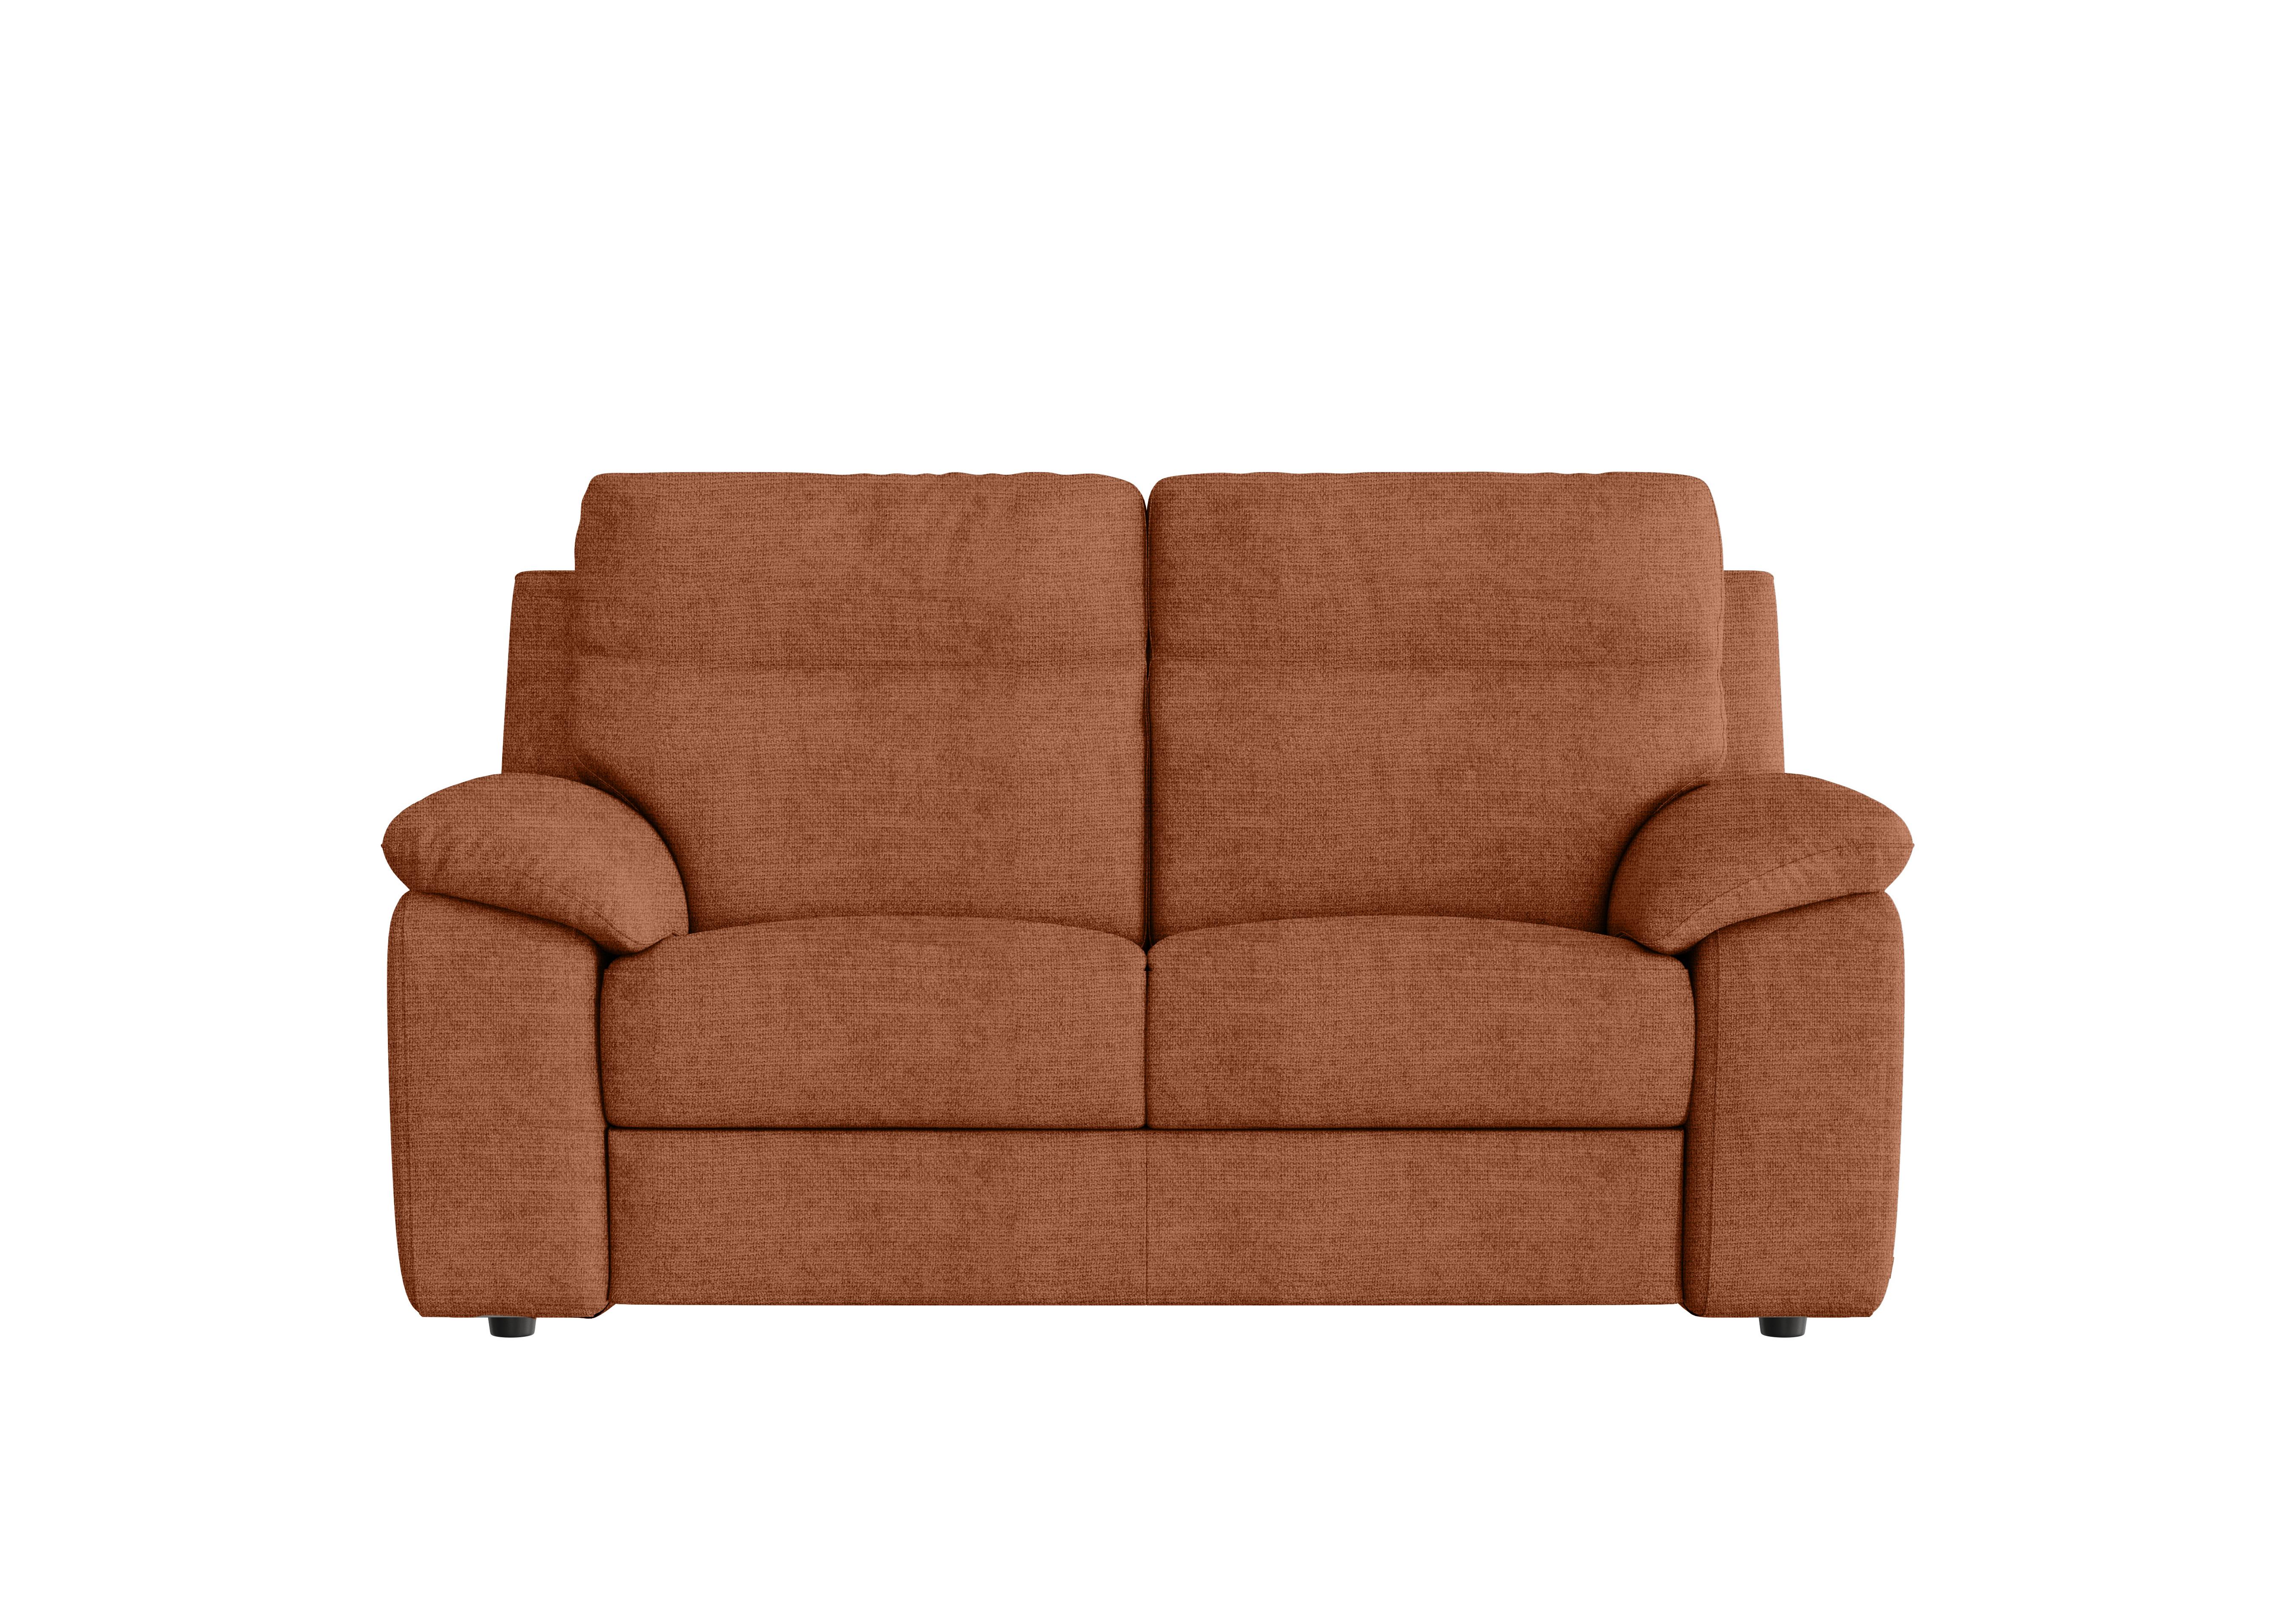 Pepino 2 Seater Fabric Sofa in Baobab Ruggine 549 on Furniture Village